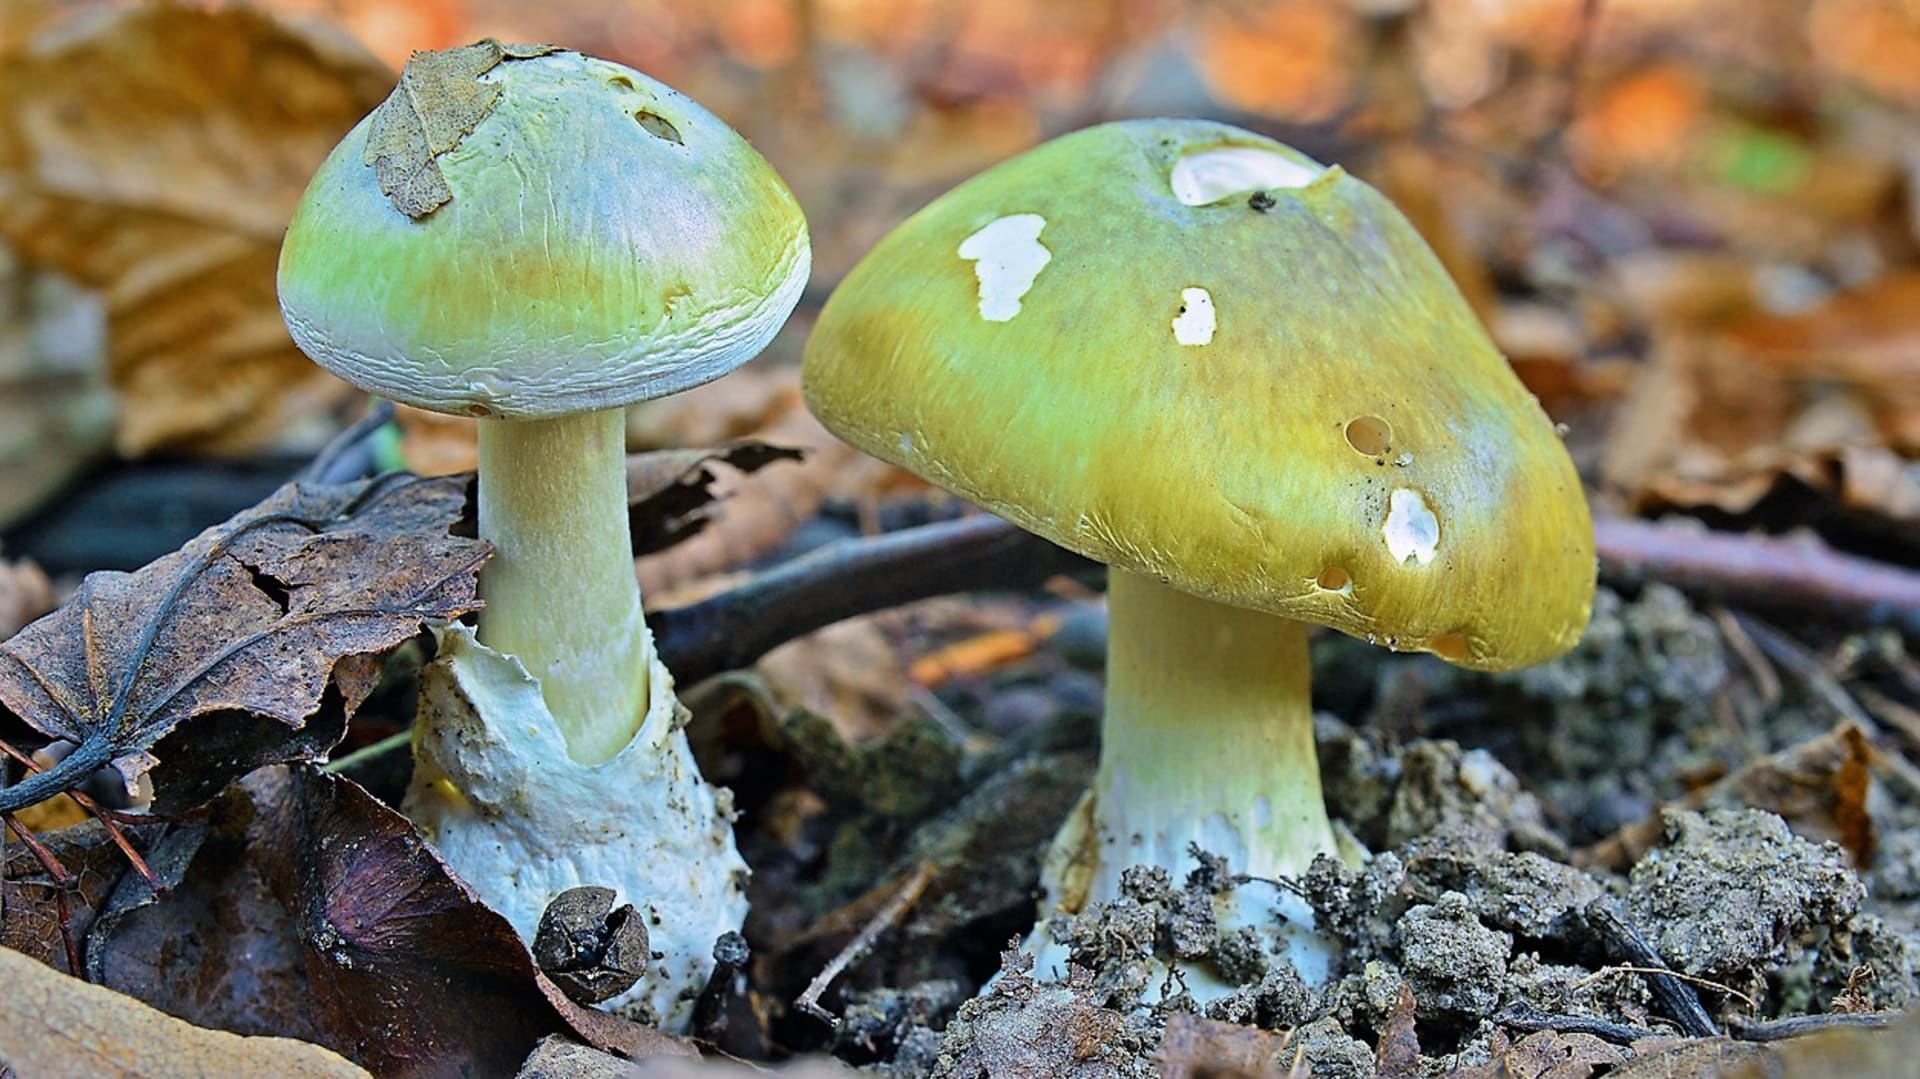 Nejjedovatější a také nejnebezpečnější houbou, na kterou můžeme v lese narazit, je muchomůrka zelená, resp. muchomůrka hlíznatá (Amanita phalloides).